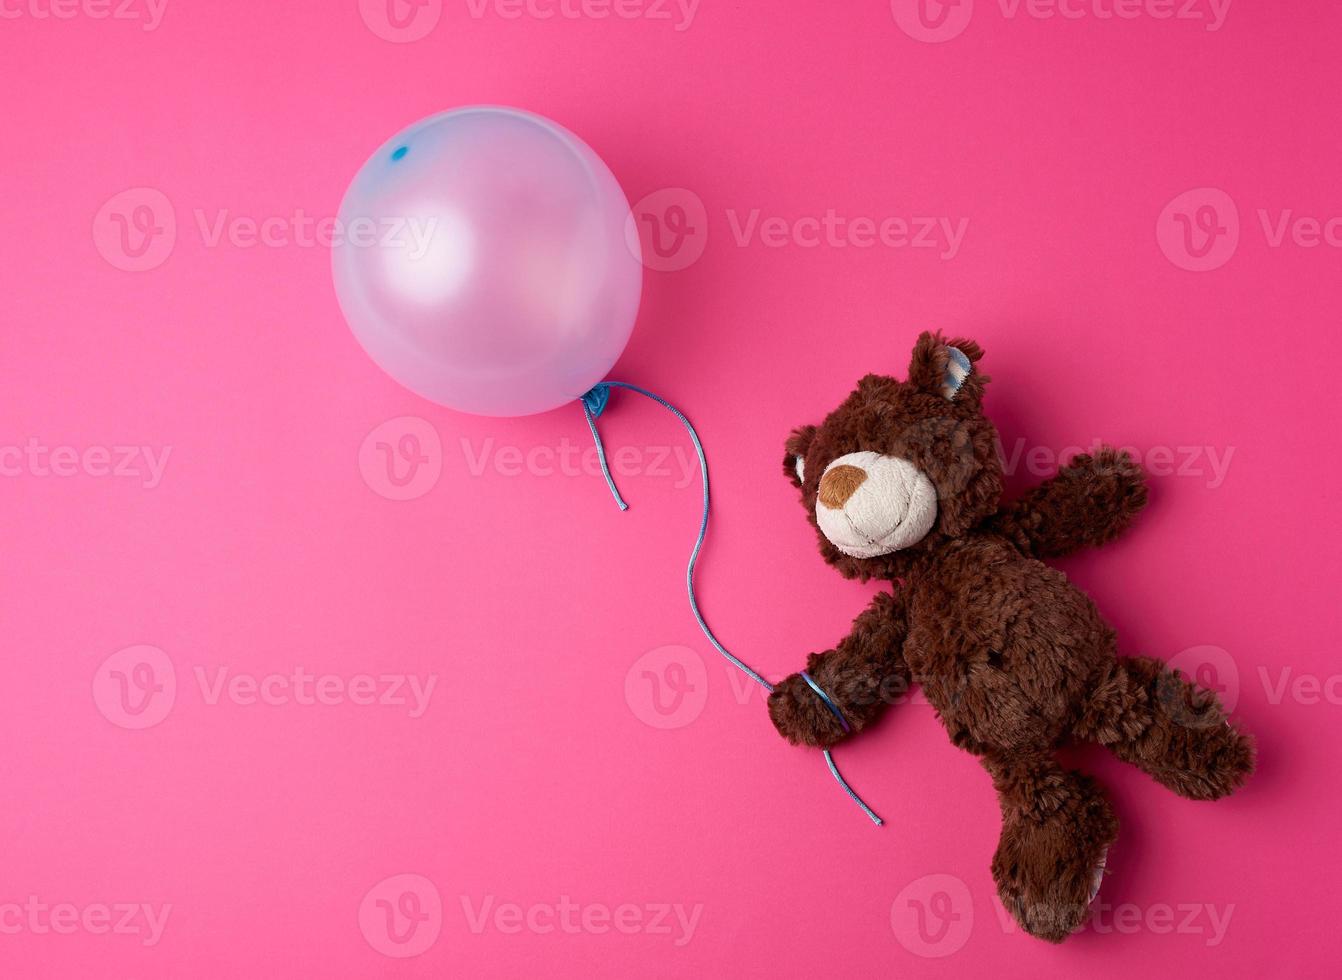 osito de peluche marrón sosteniendo un globo inflado azul foto